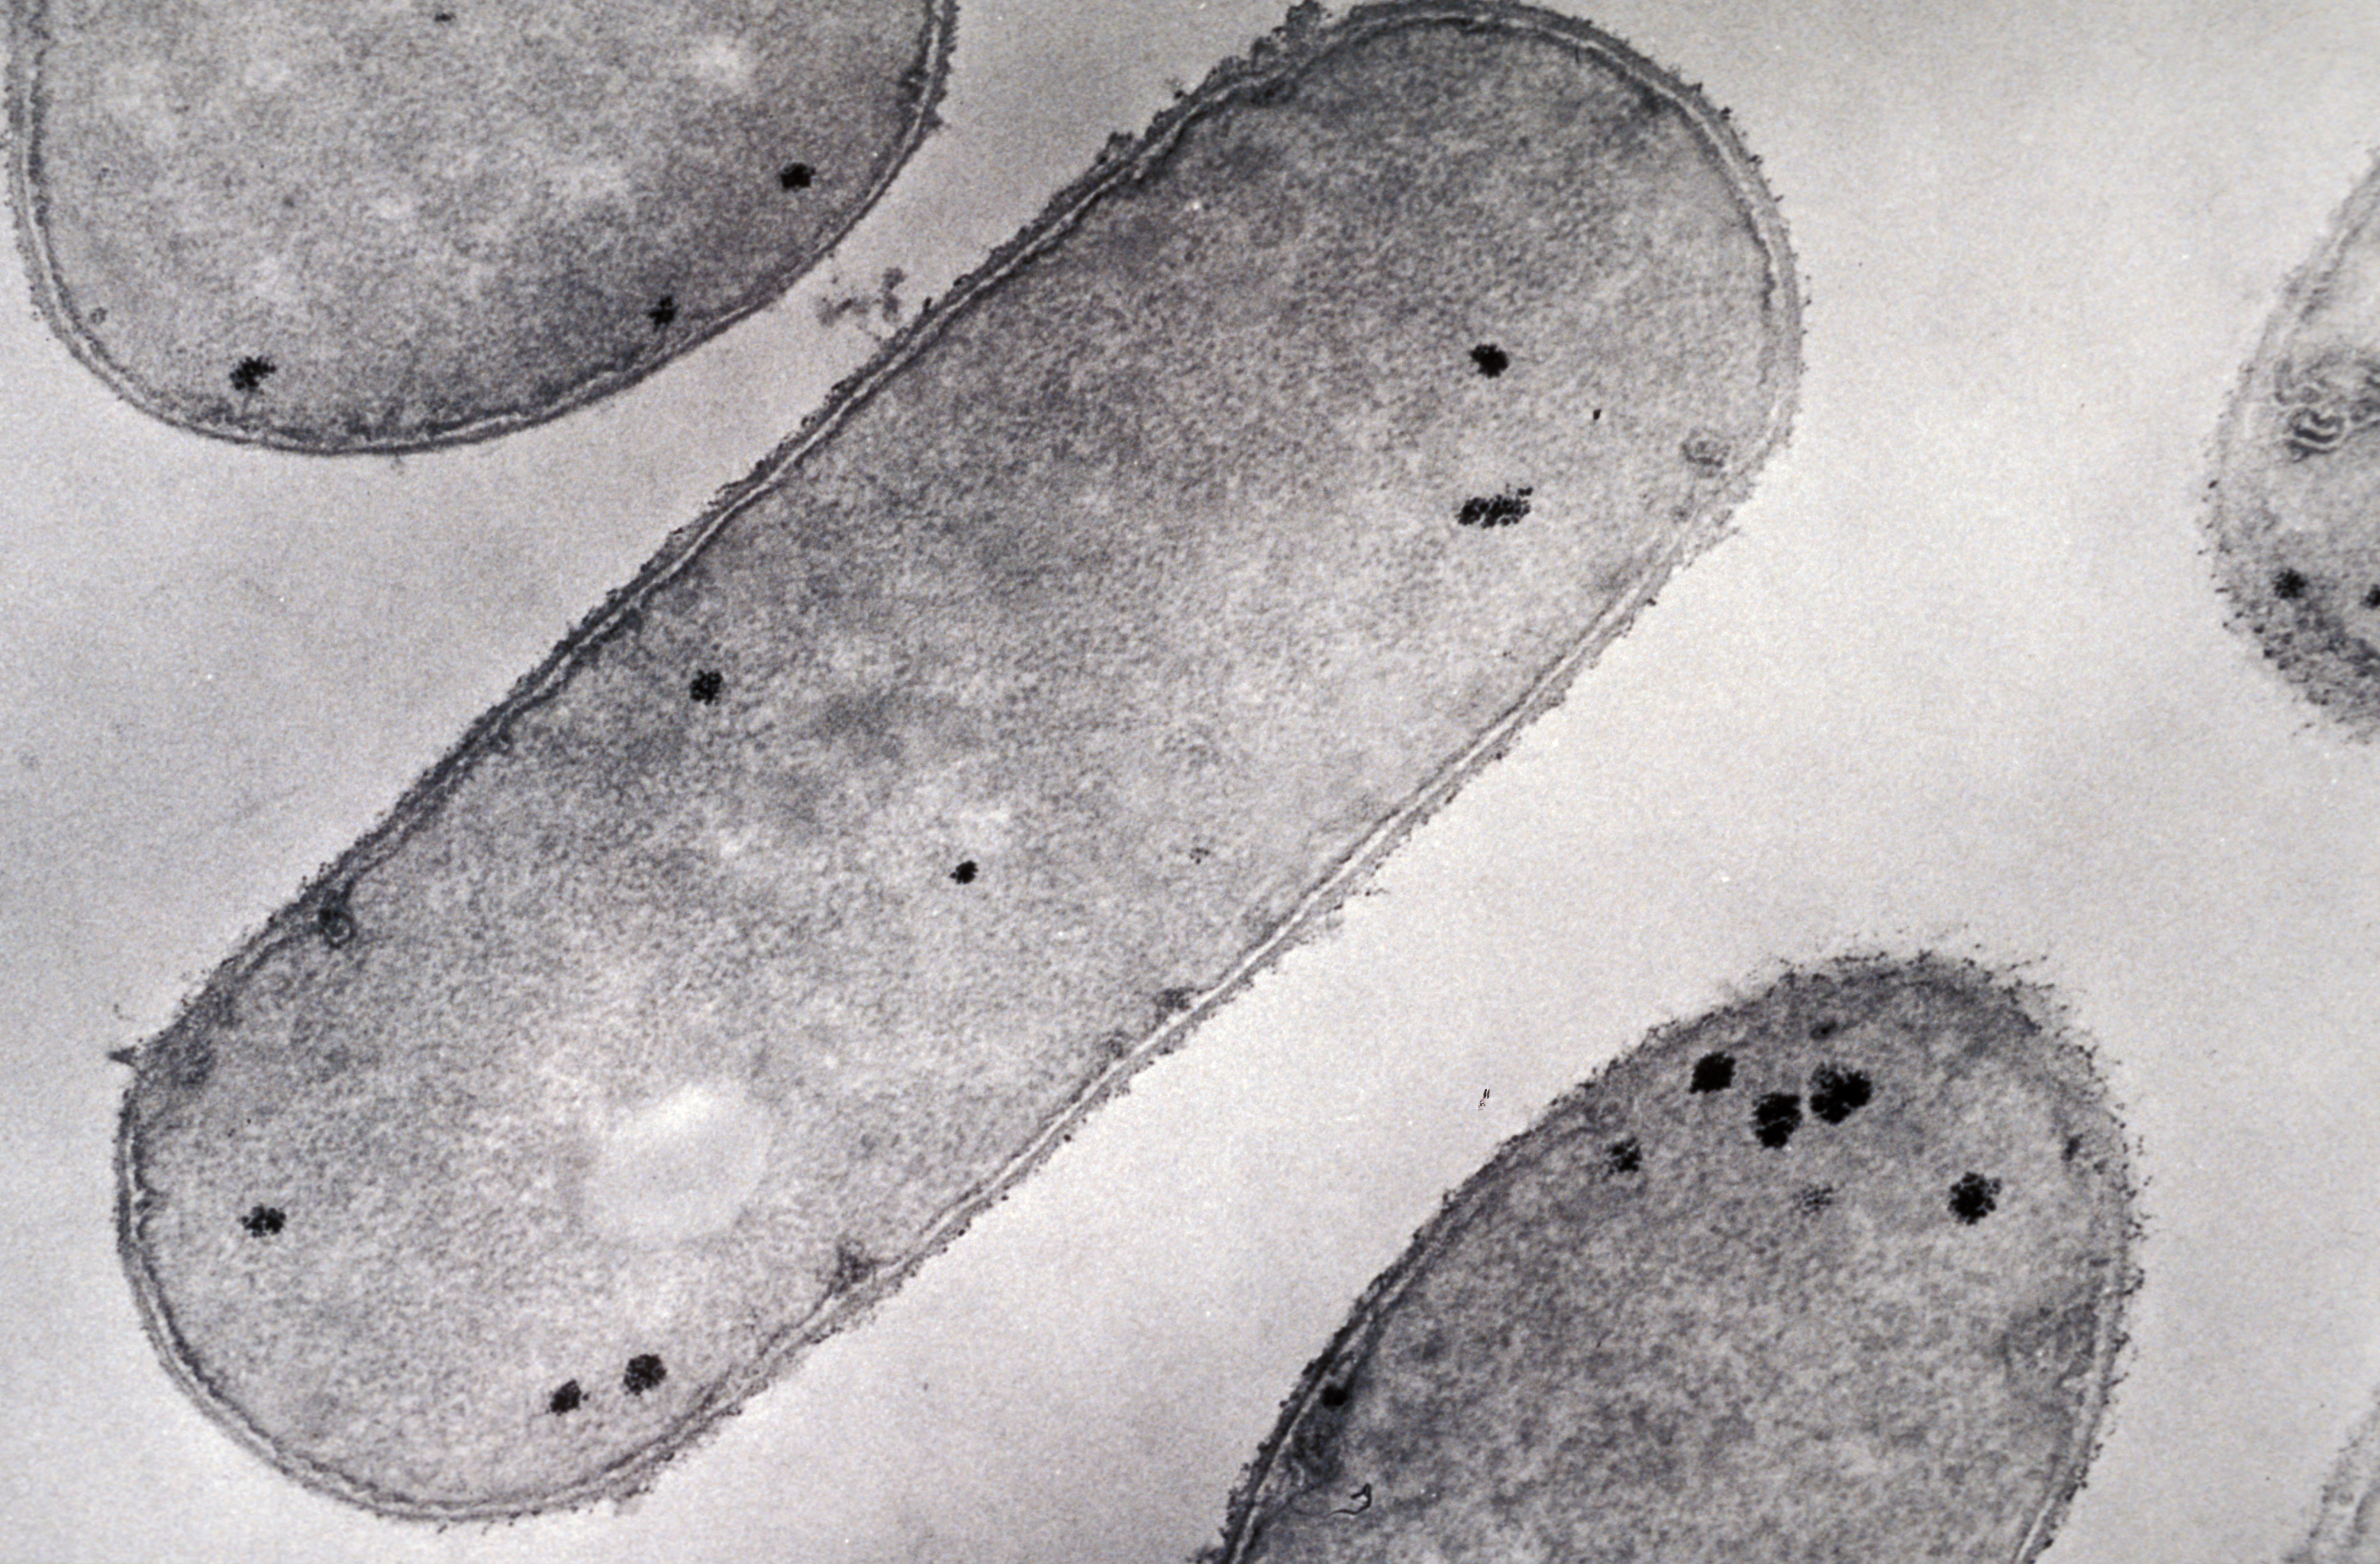 Bacillus cereus